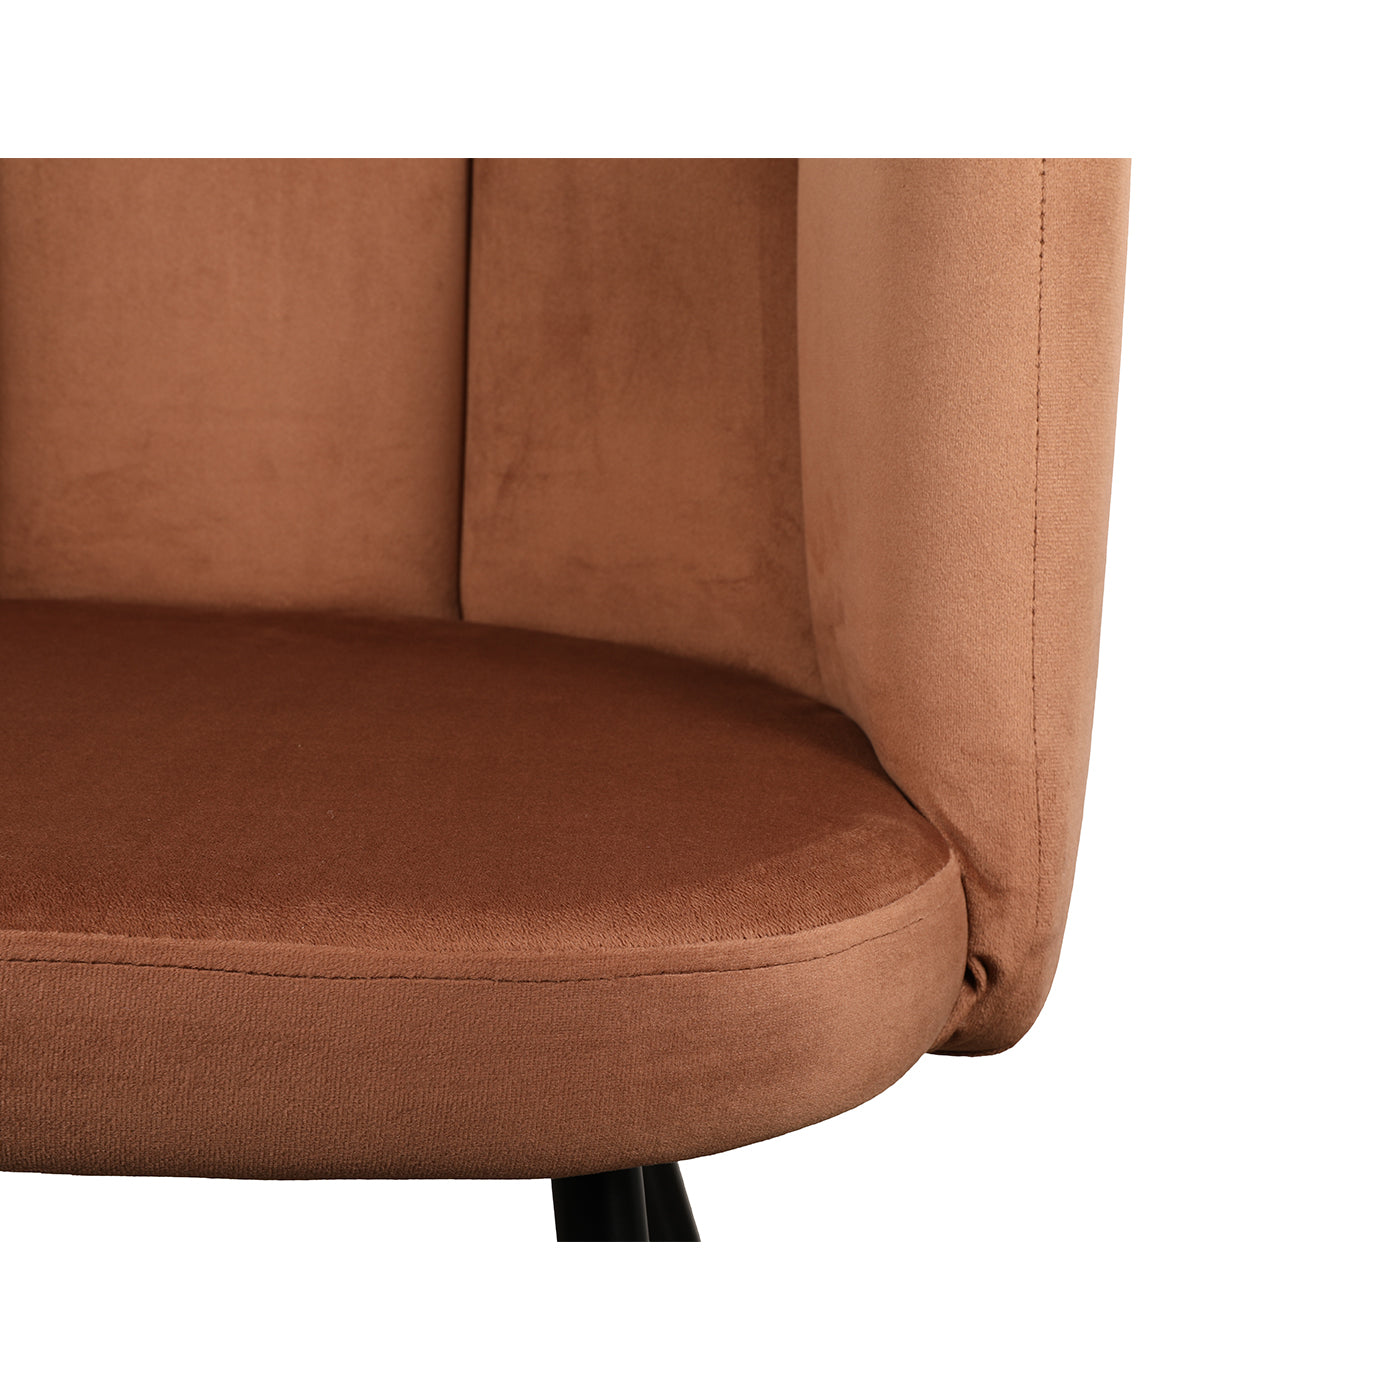 Eettafel stoel met armleuning Asley in koper kleur van Thimalo detailfoto fluweel stof